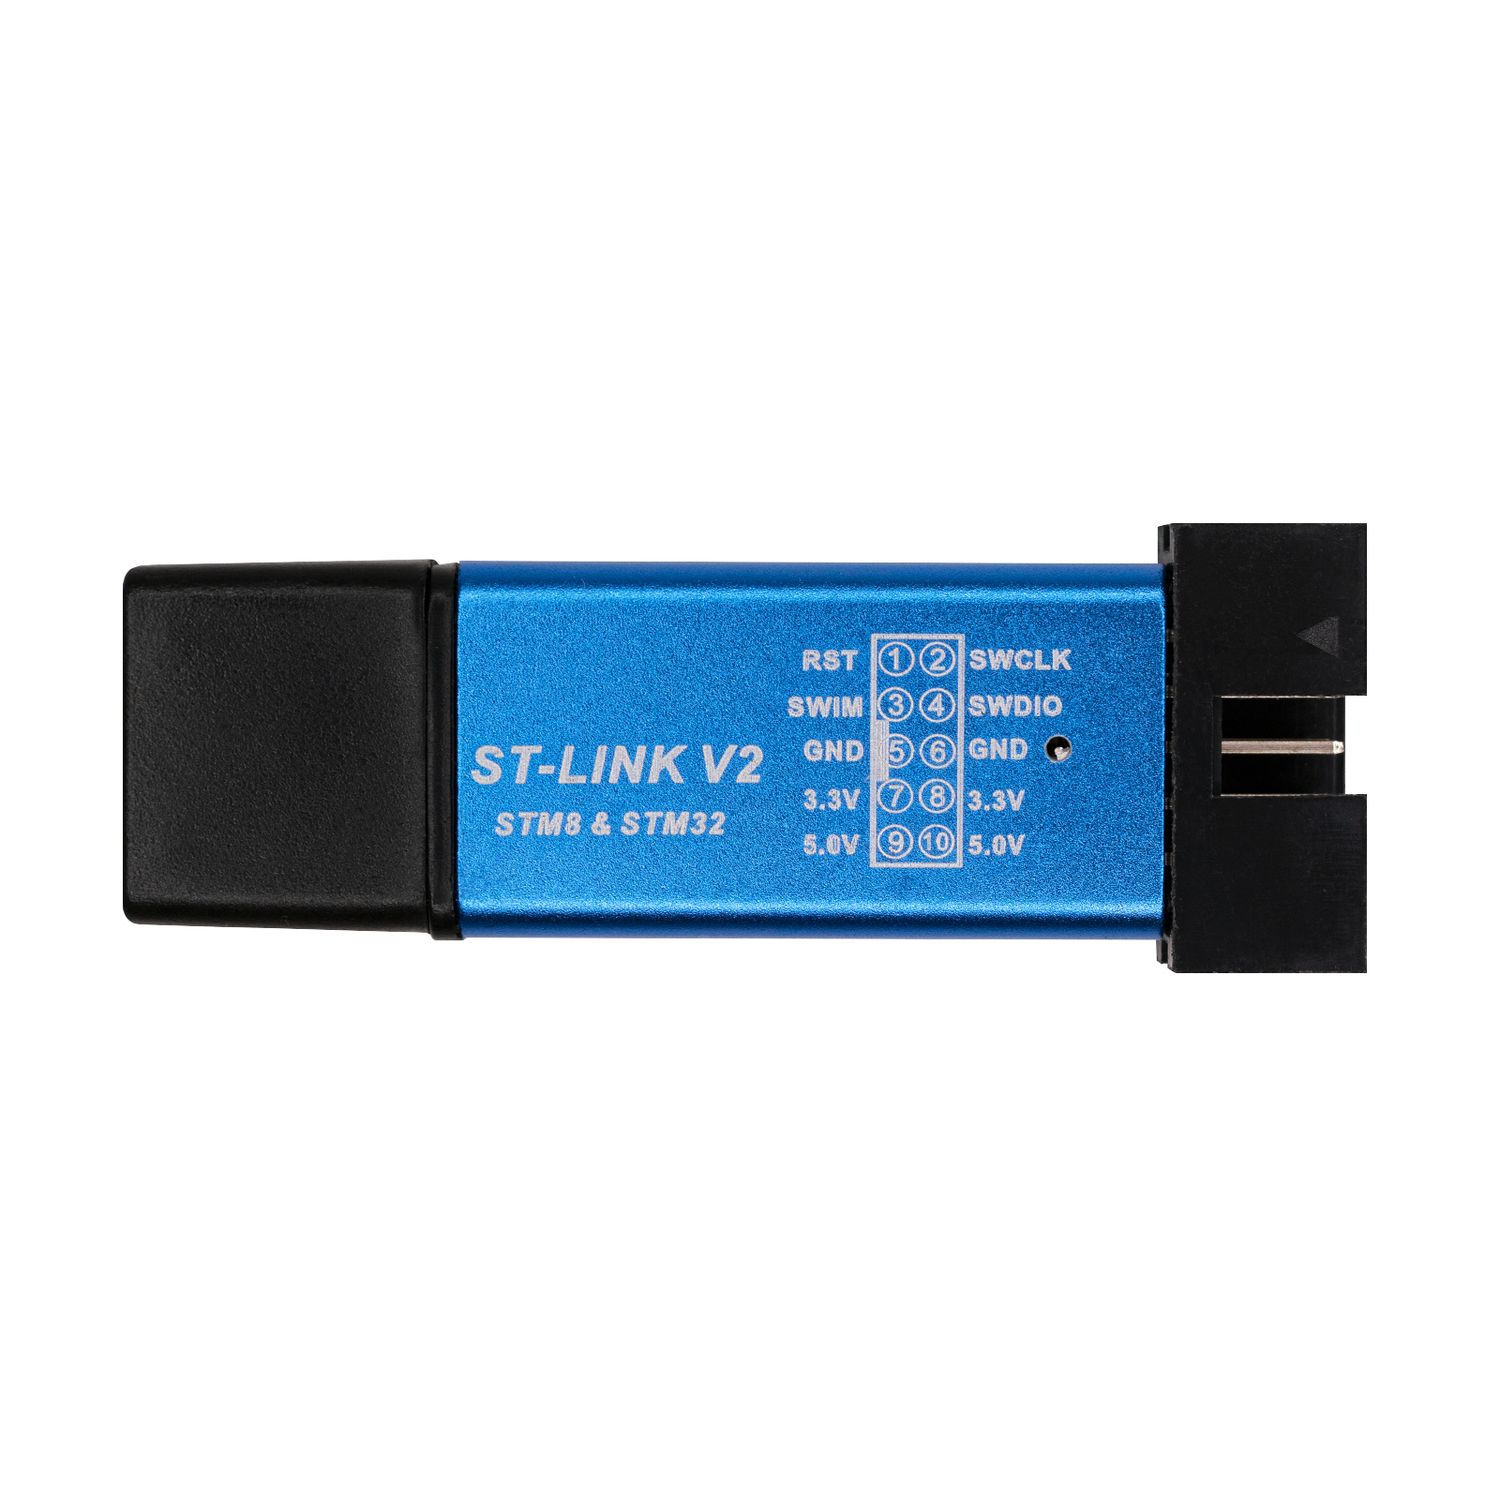 ST-LINK V2 USB программатор STM8 и STM32 микроконтроллеров